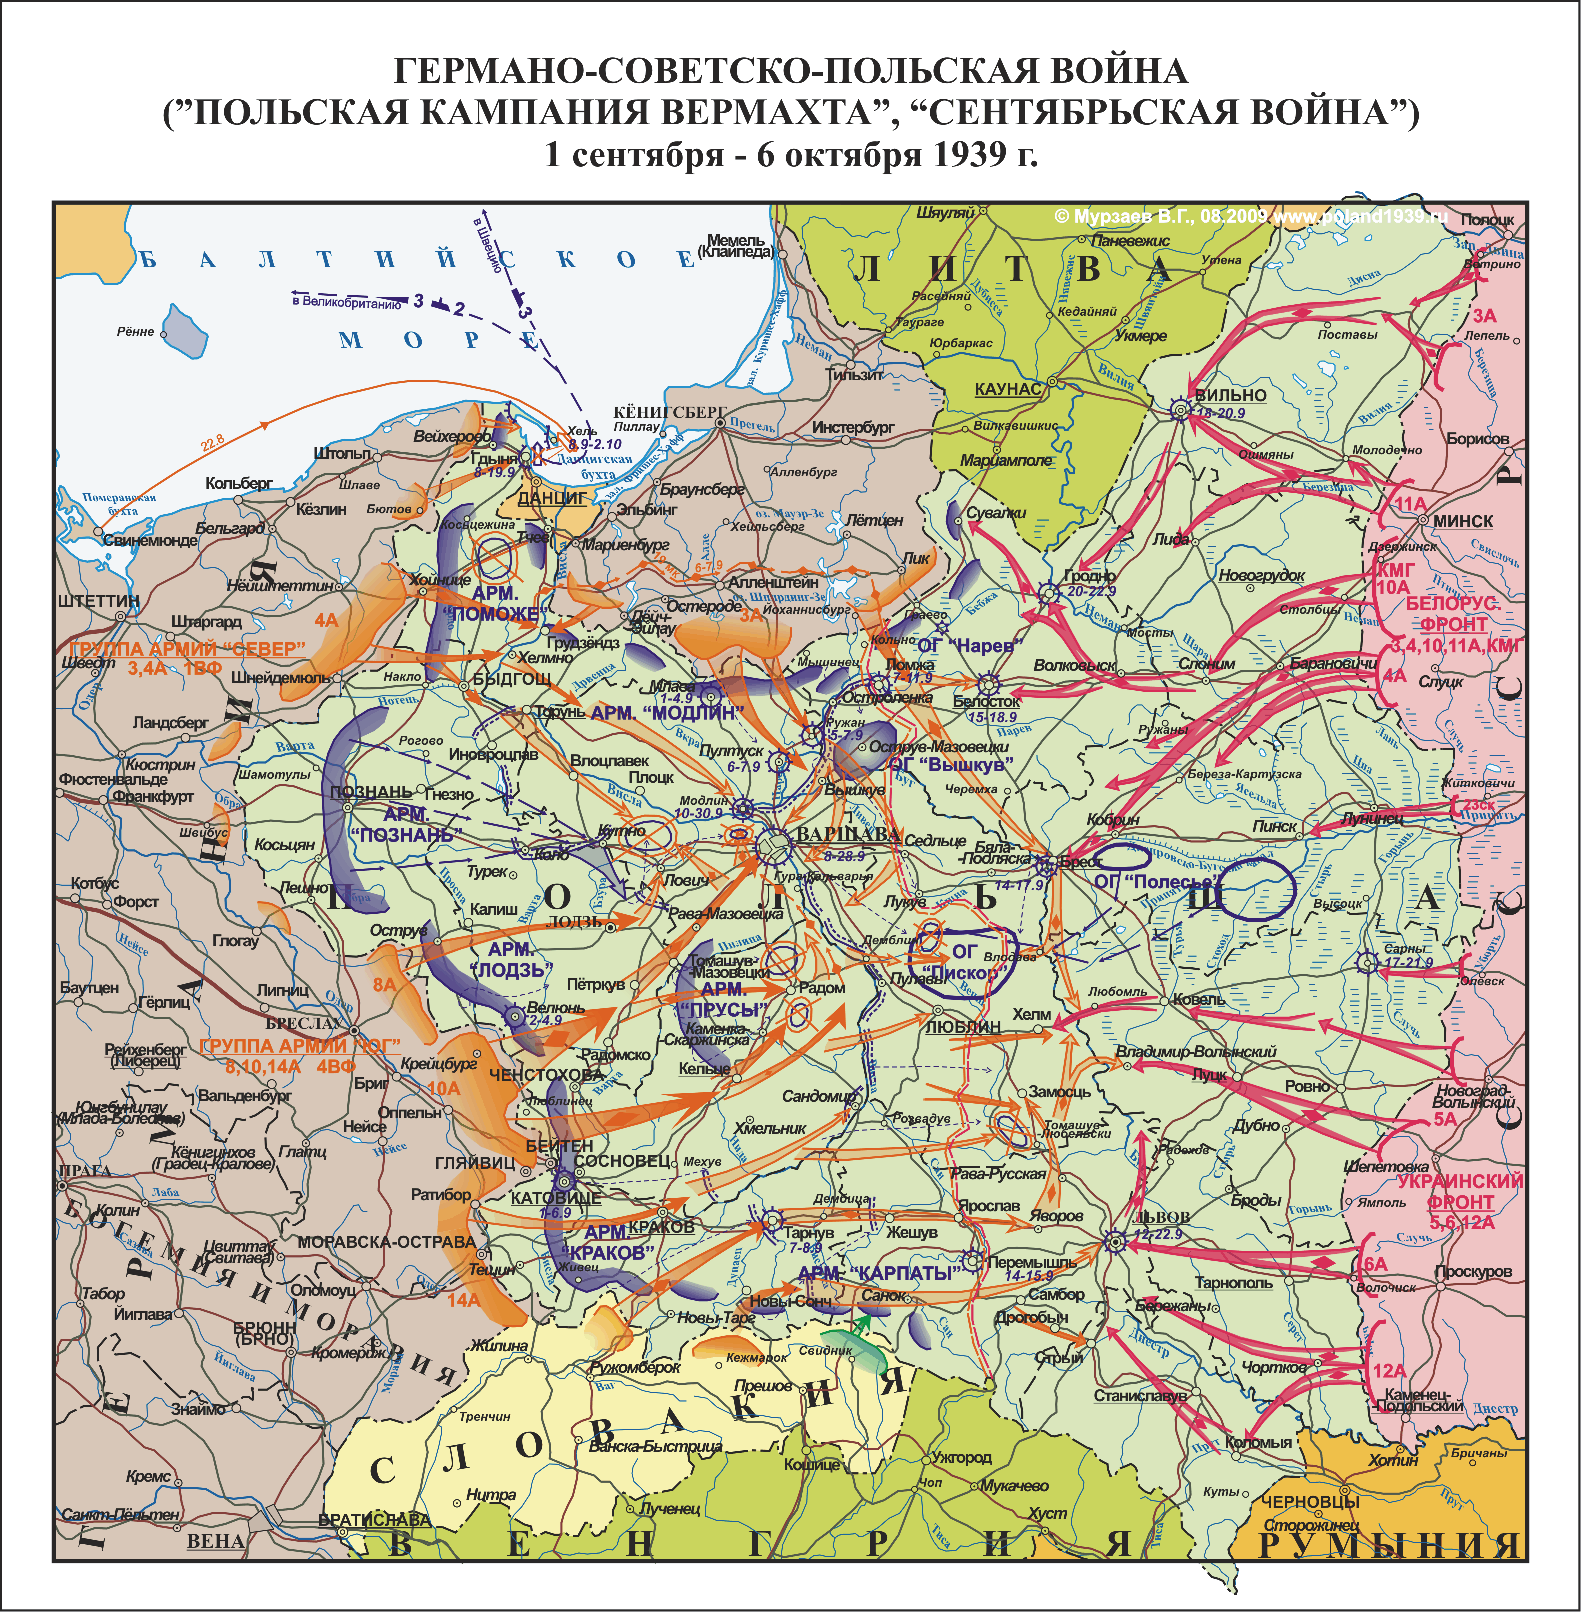 Планы второй мировой войны в европе. Польская кампания вермахта 1939 карта. Карта второй мировой войны 1939 Германии. Польская кампания 1939 карта.